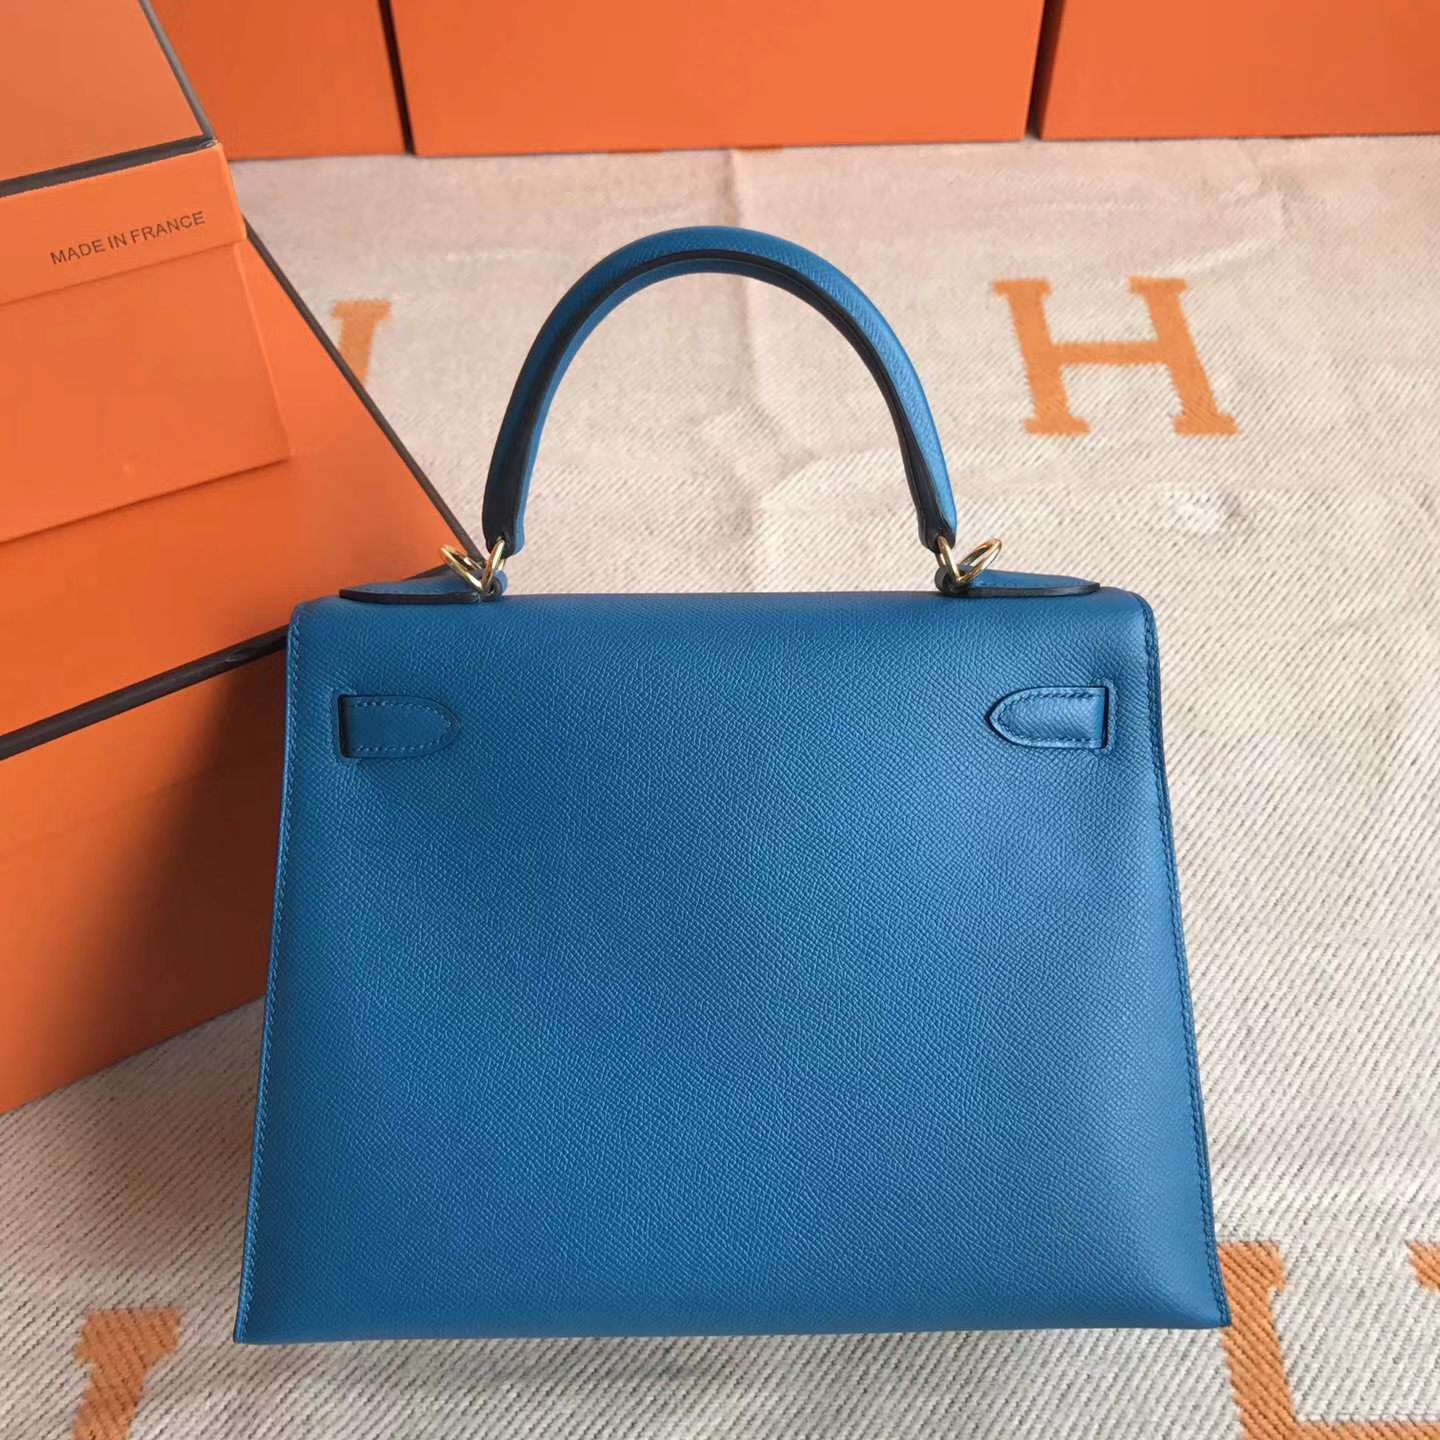 Cheap Hermes Kelly28cm Bag in 7W Blue Izmir Epsom Leather Gold Hardware